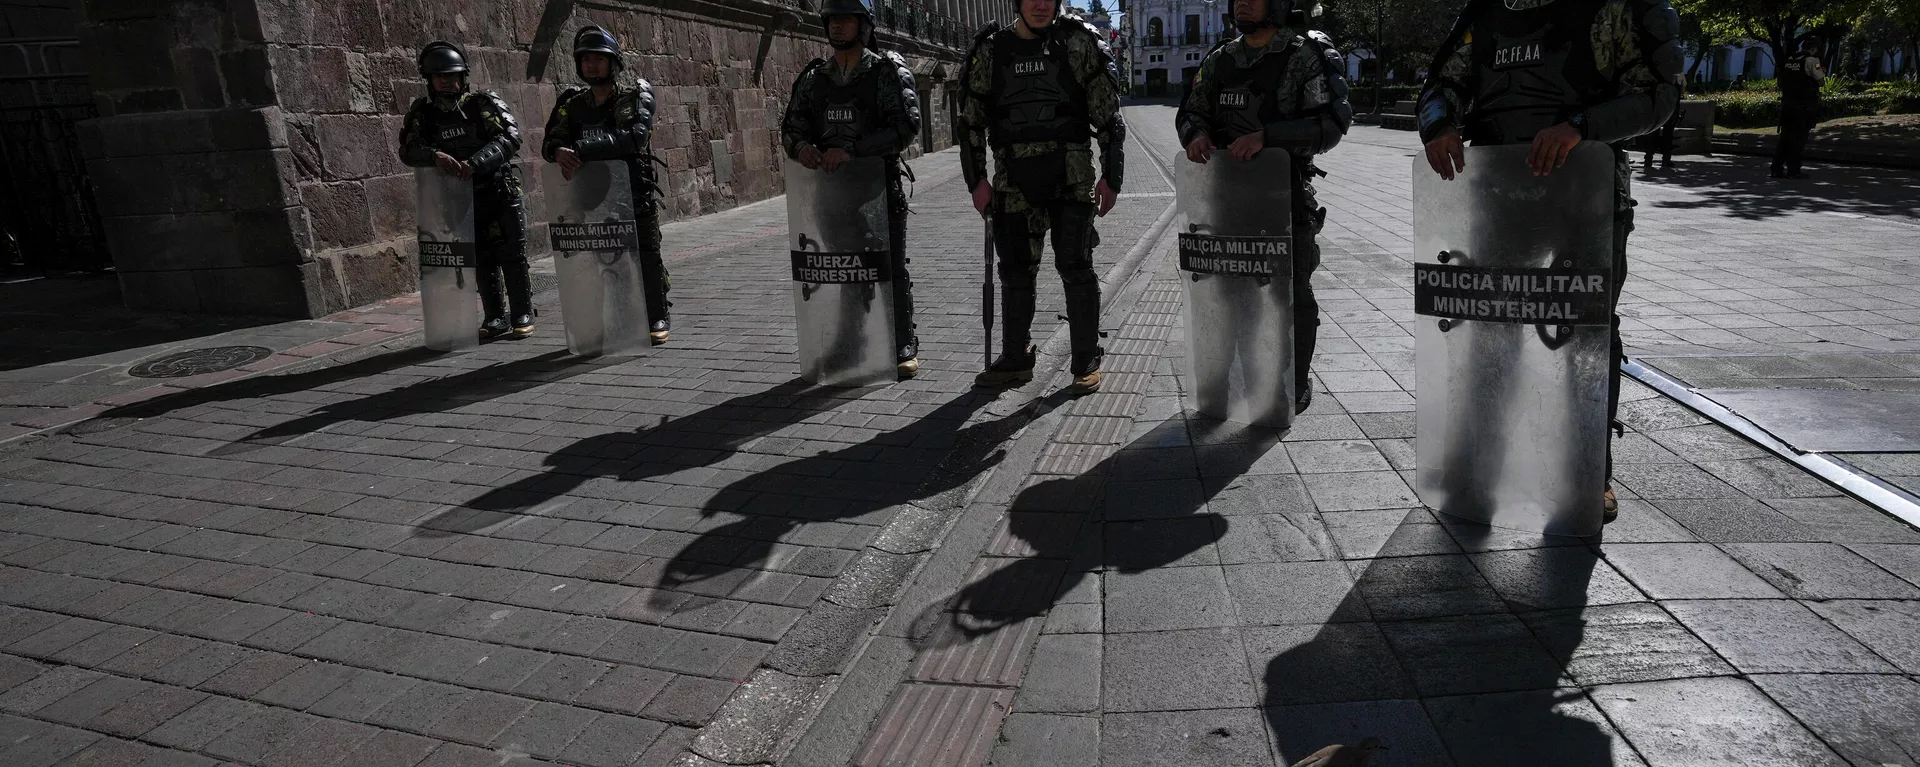 Στρατιωτική αστυνομία φρουρεί το προεδρικό μέγαρο στο Κίτο του Ισημερινού, Πέμπτη, 10 Αυγούστου 2023. Ο Πρόεδρος Γκιγιέρμο Λάσο κήρυξε κατάσταση έκτακτης ανάγκης, που περιλαμβάνει επιπλέον στρατιωτικό προσωπικό που αναπτύσσεται σε όλη τη χώρα, μετά τη δολοφονία του προεδρικού υποψηφίου Φερνάντο Βιγιαβιτσένσιο σε προεκλογική συγκέντρωση στο Κίτο.  - Sputnik International, 1920, 17.08.2023